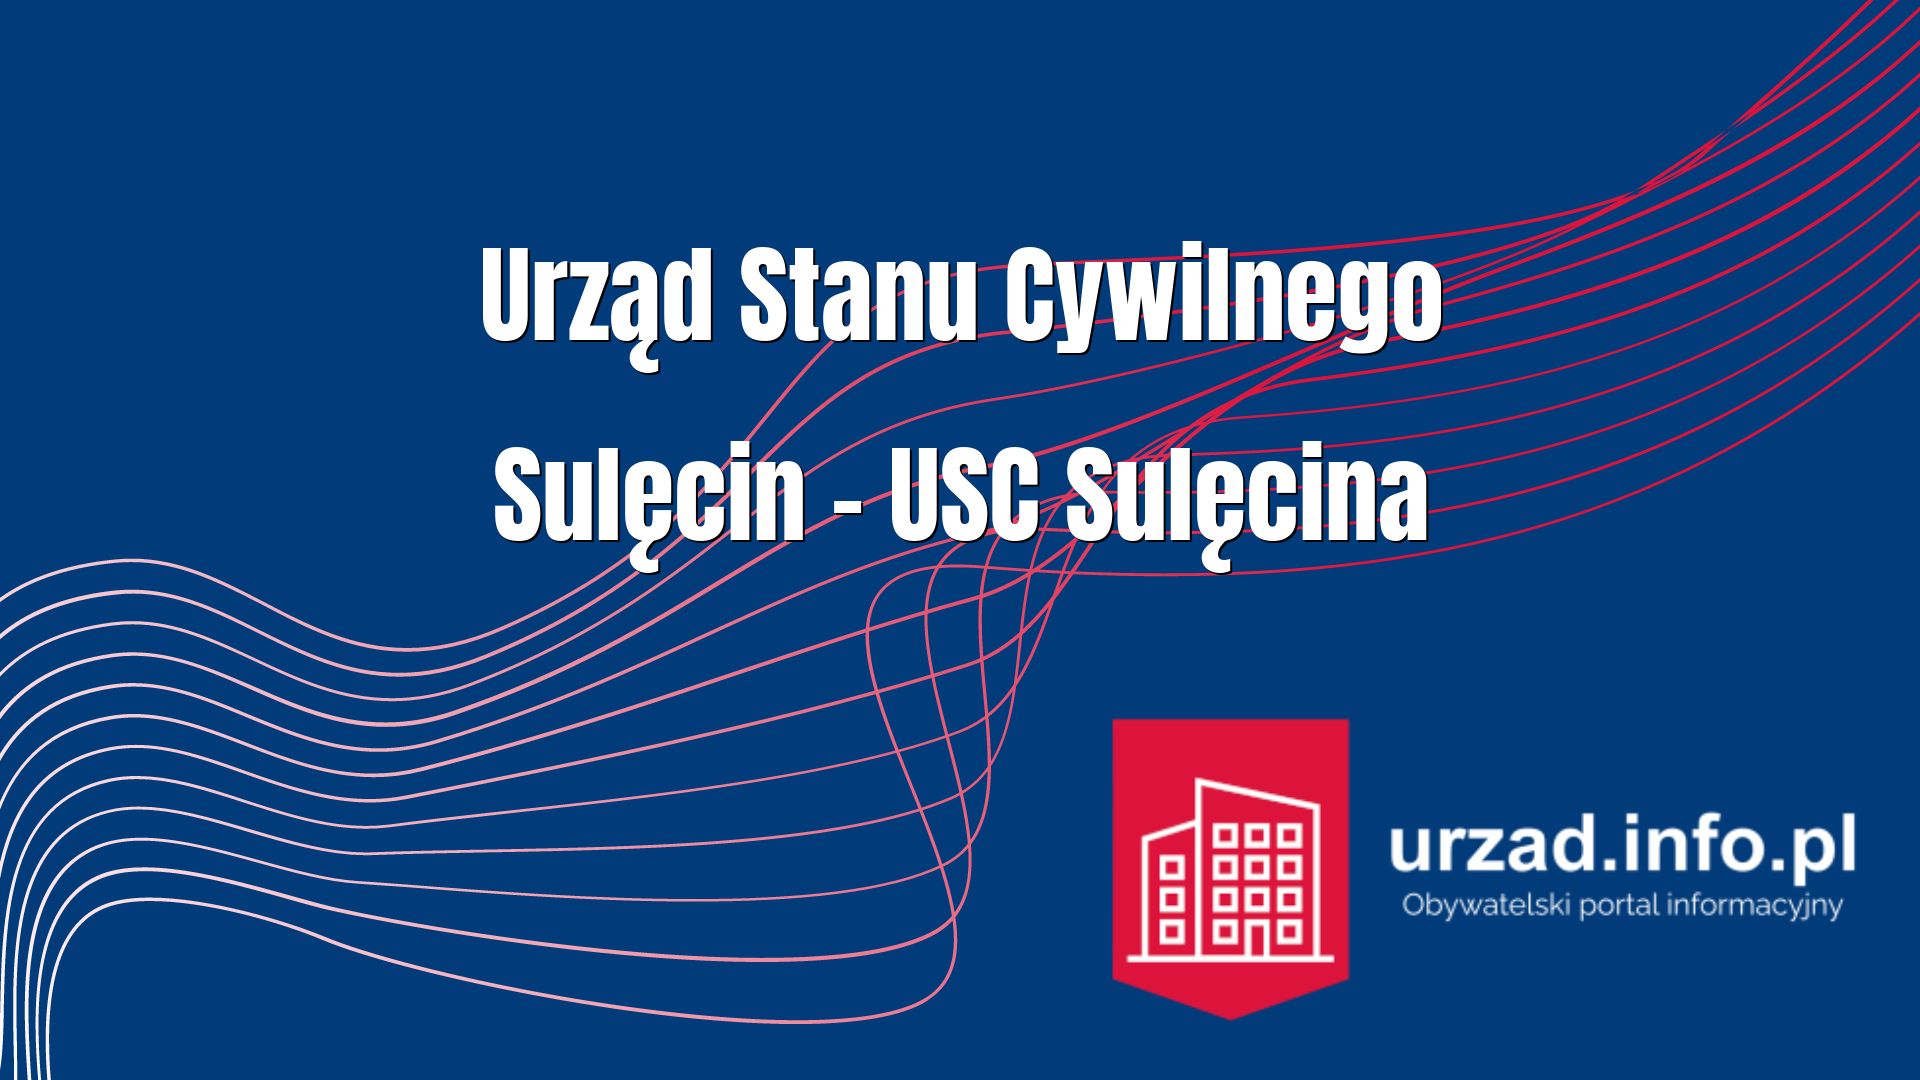 Urząd Stanu Cywilnego Sulęcin – USC Sulęcina